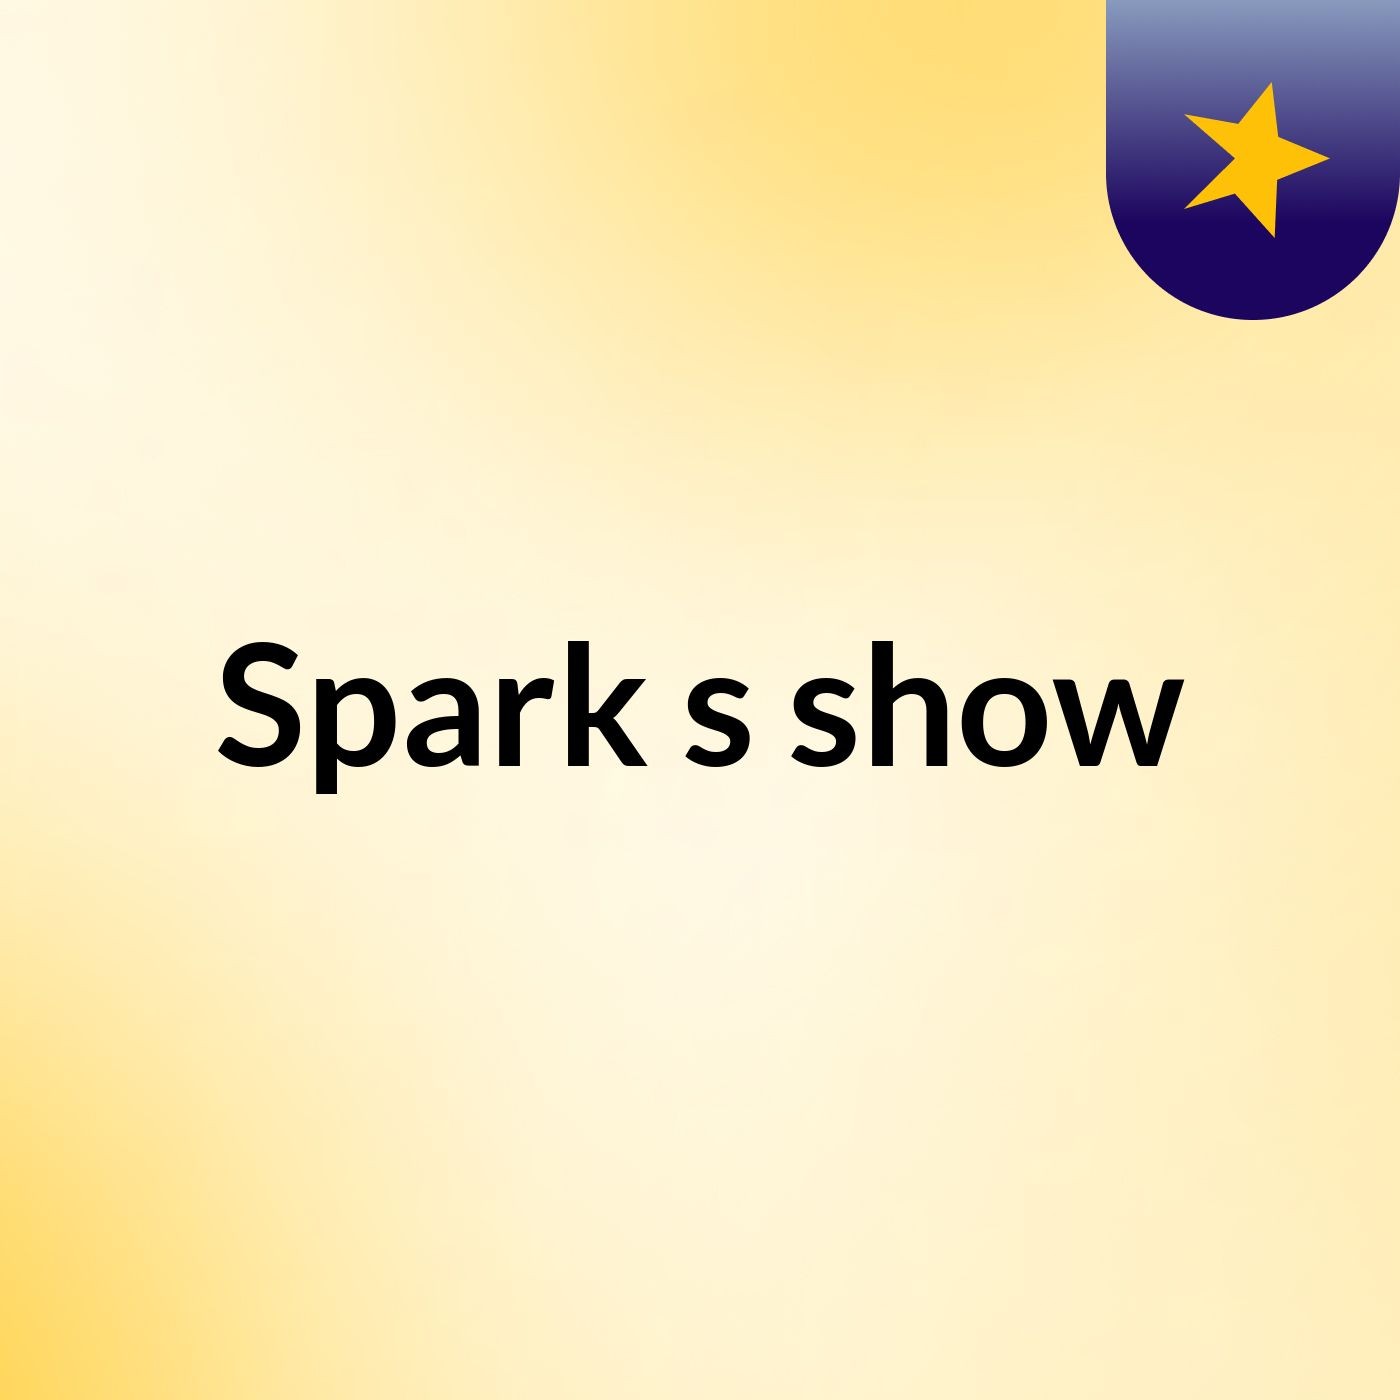 Spark's show